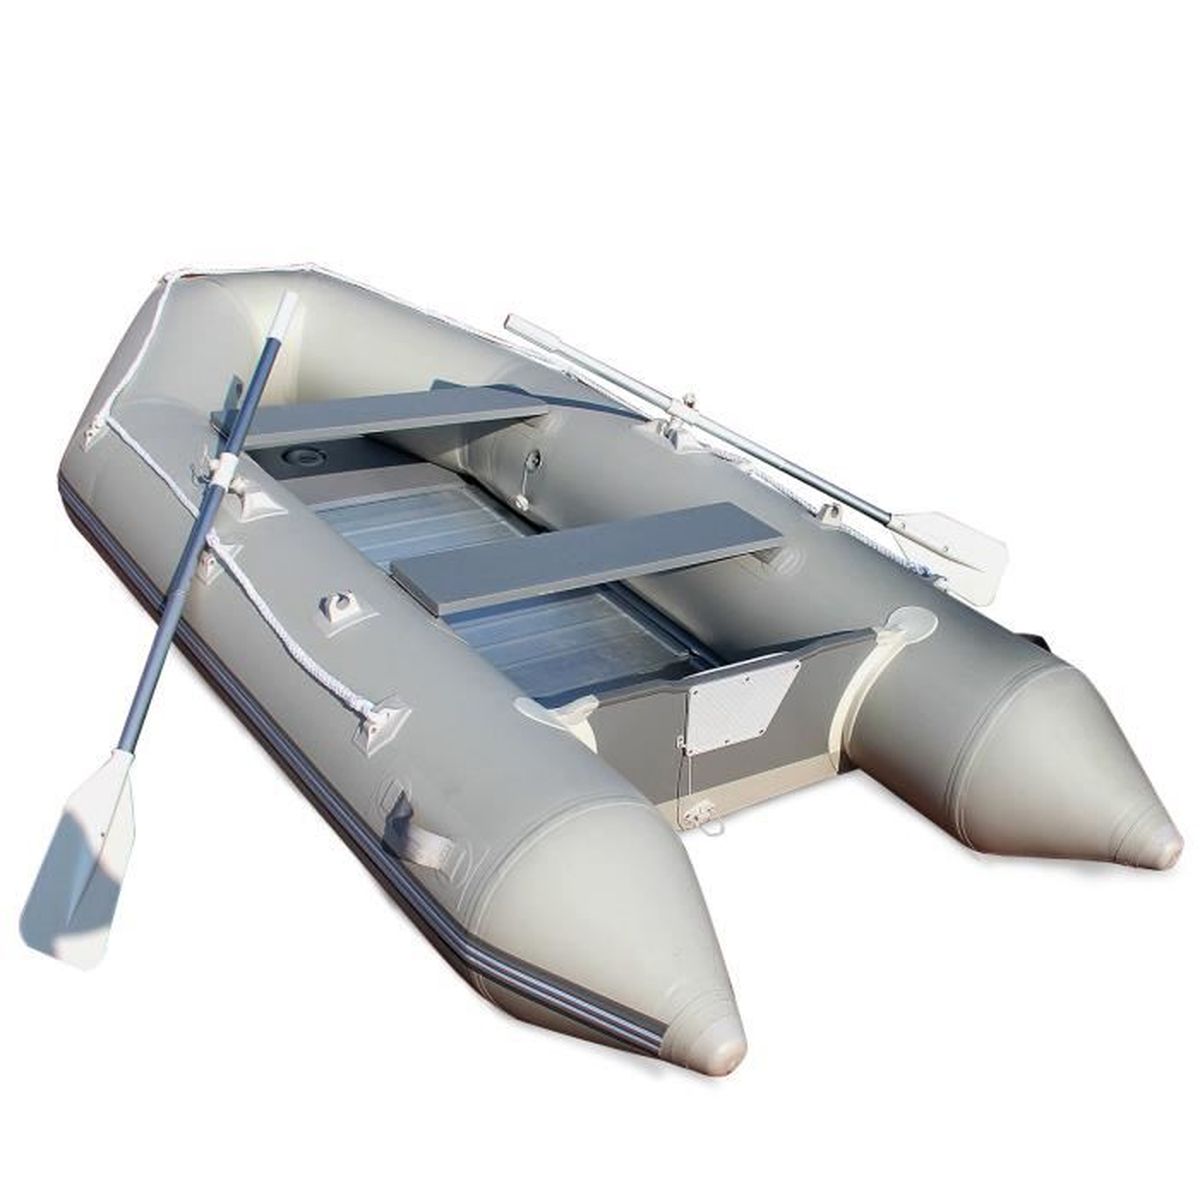 Изготовим лодку пвх. Лодка надувная Хайпалон фарватер 4,3 метра алюминиевый пол. Лодка надувная ПВХ (алюминиевый пол) x-Boat x-320. Лодка ПВХ 3 20. Надувная лодка Rima III Inflatable Dinghy 100''.